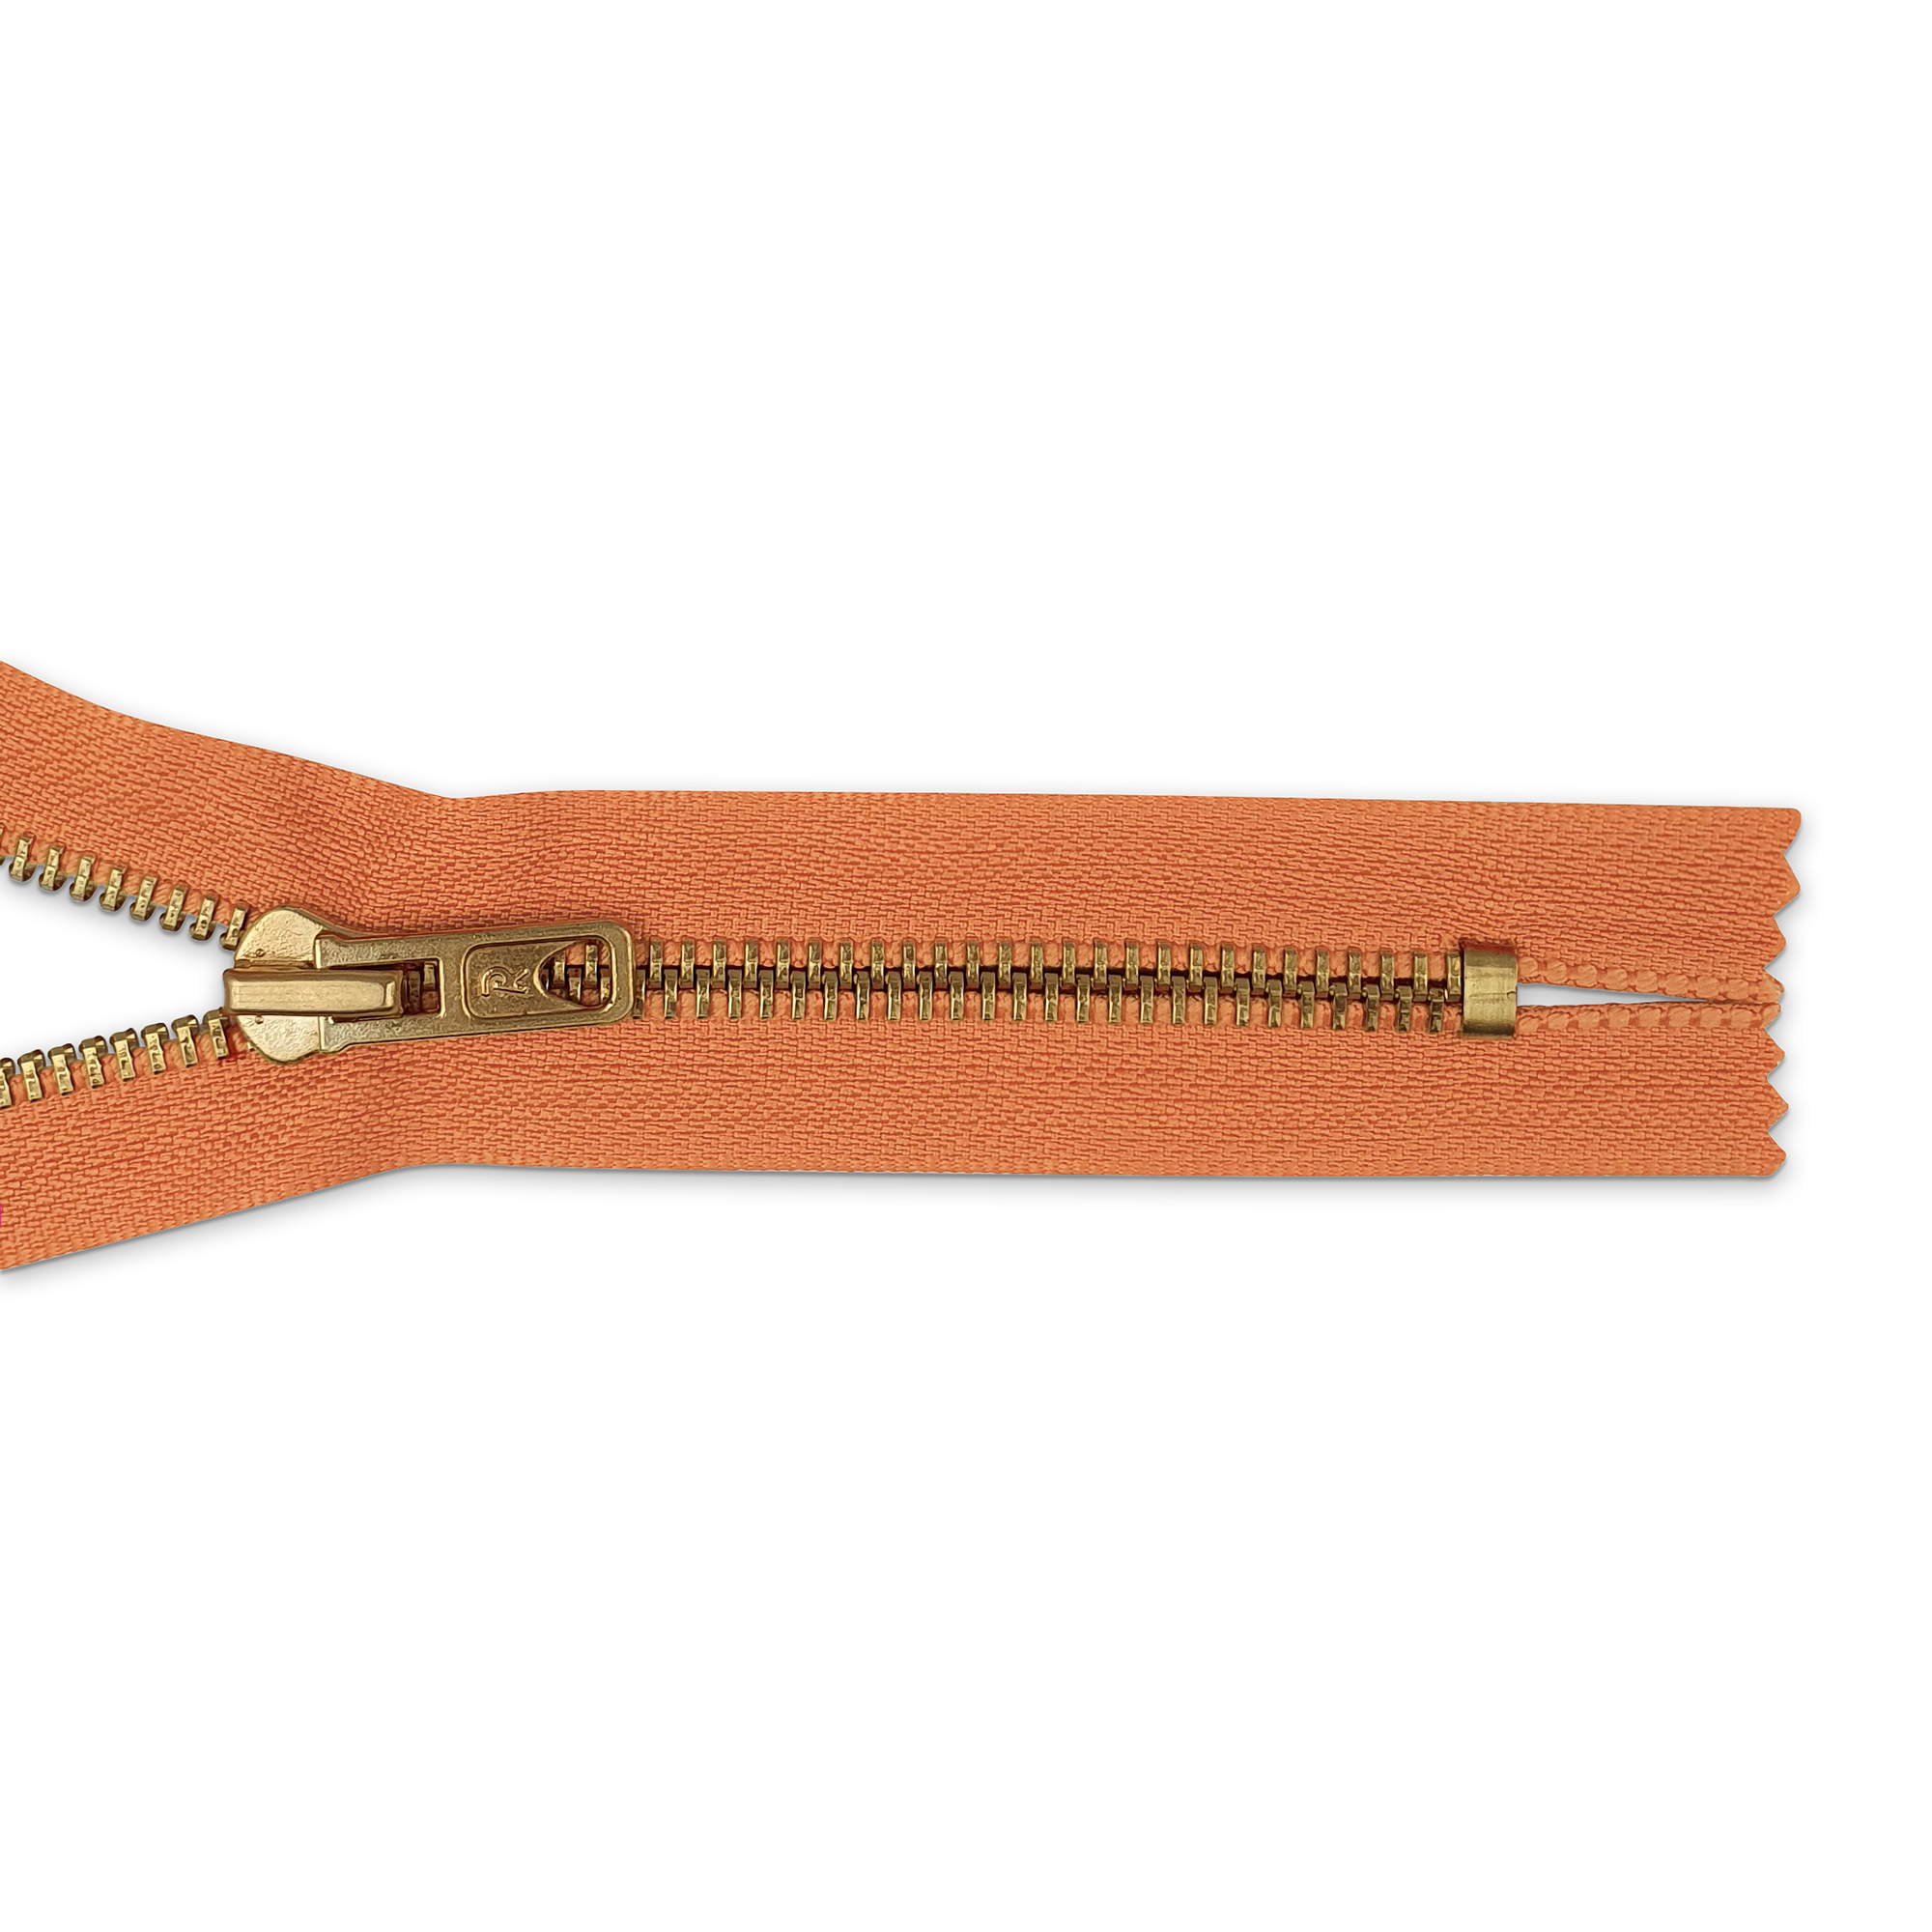 Reißverschluss  nicht teilbar, Metall goldf. breit, bräunlich-orange, hochwertiger Marken-Reißverschluss von Rubi/Barcelona